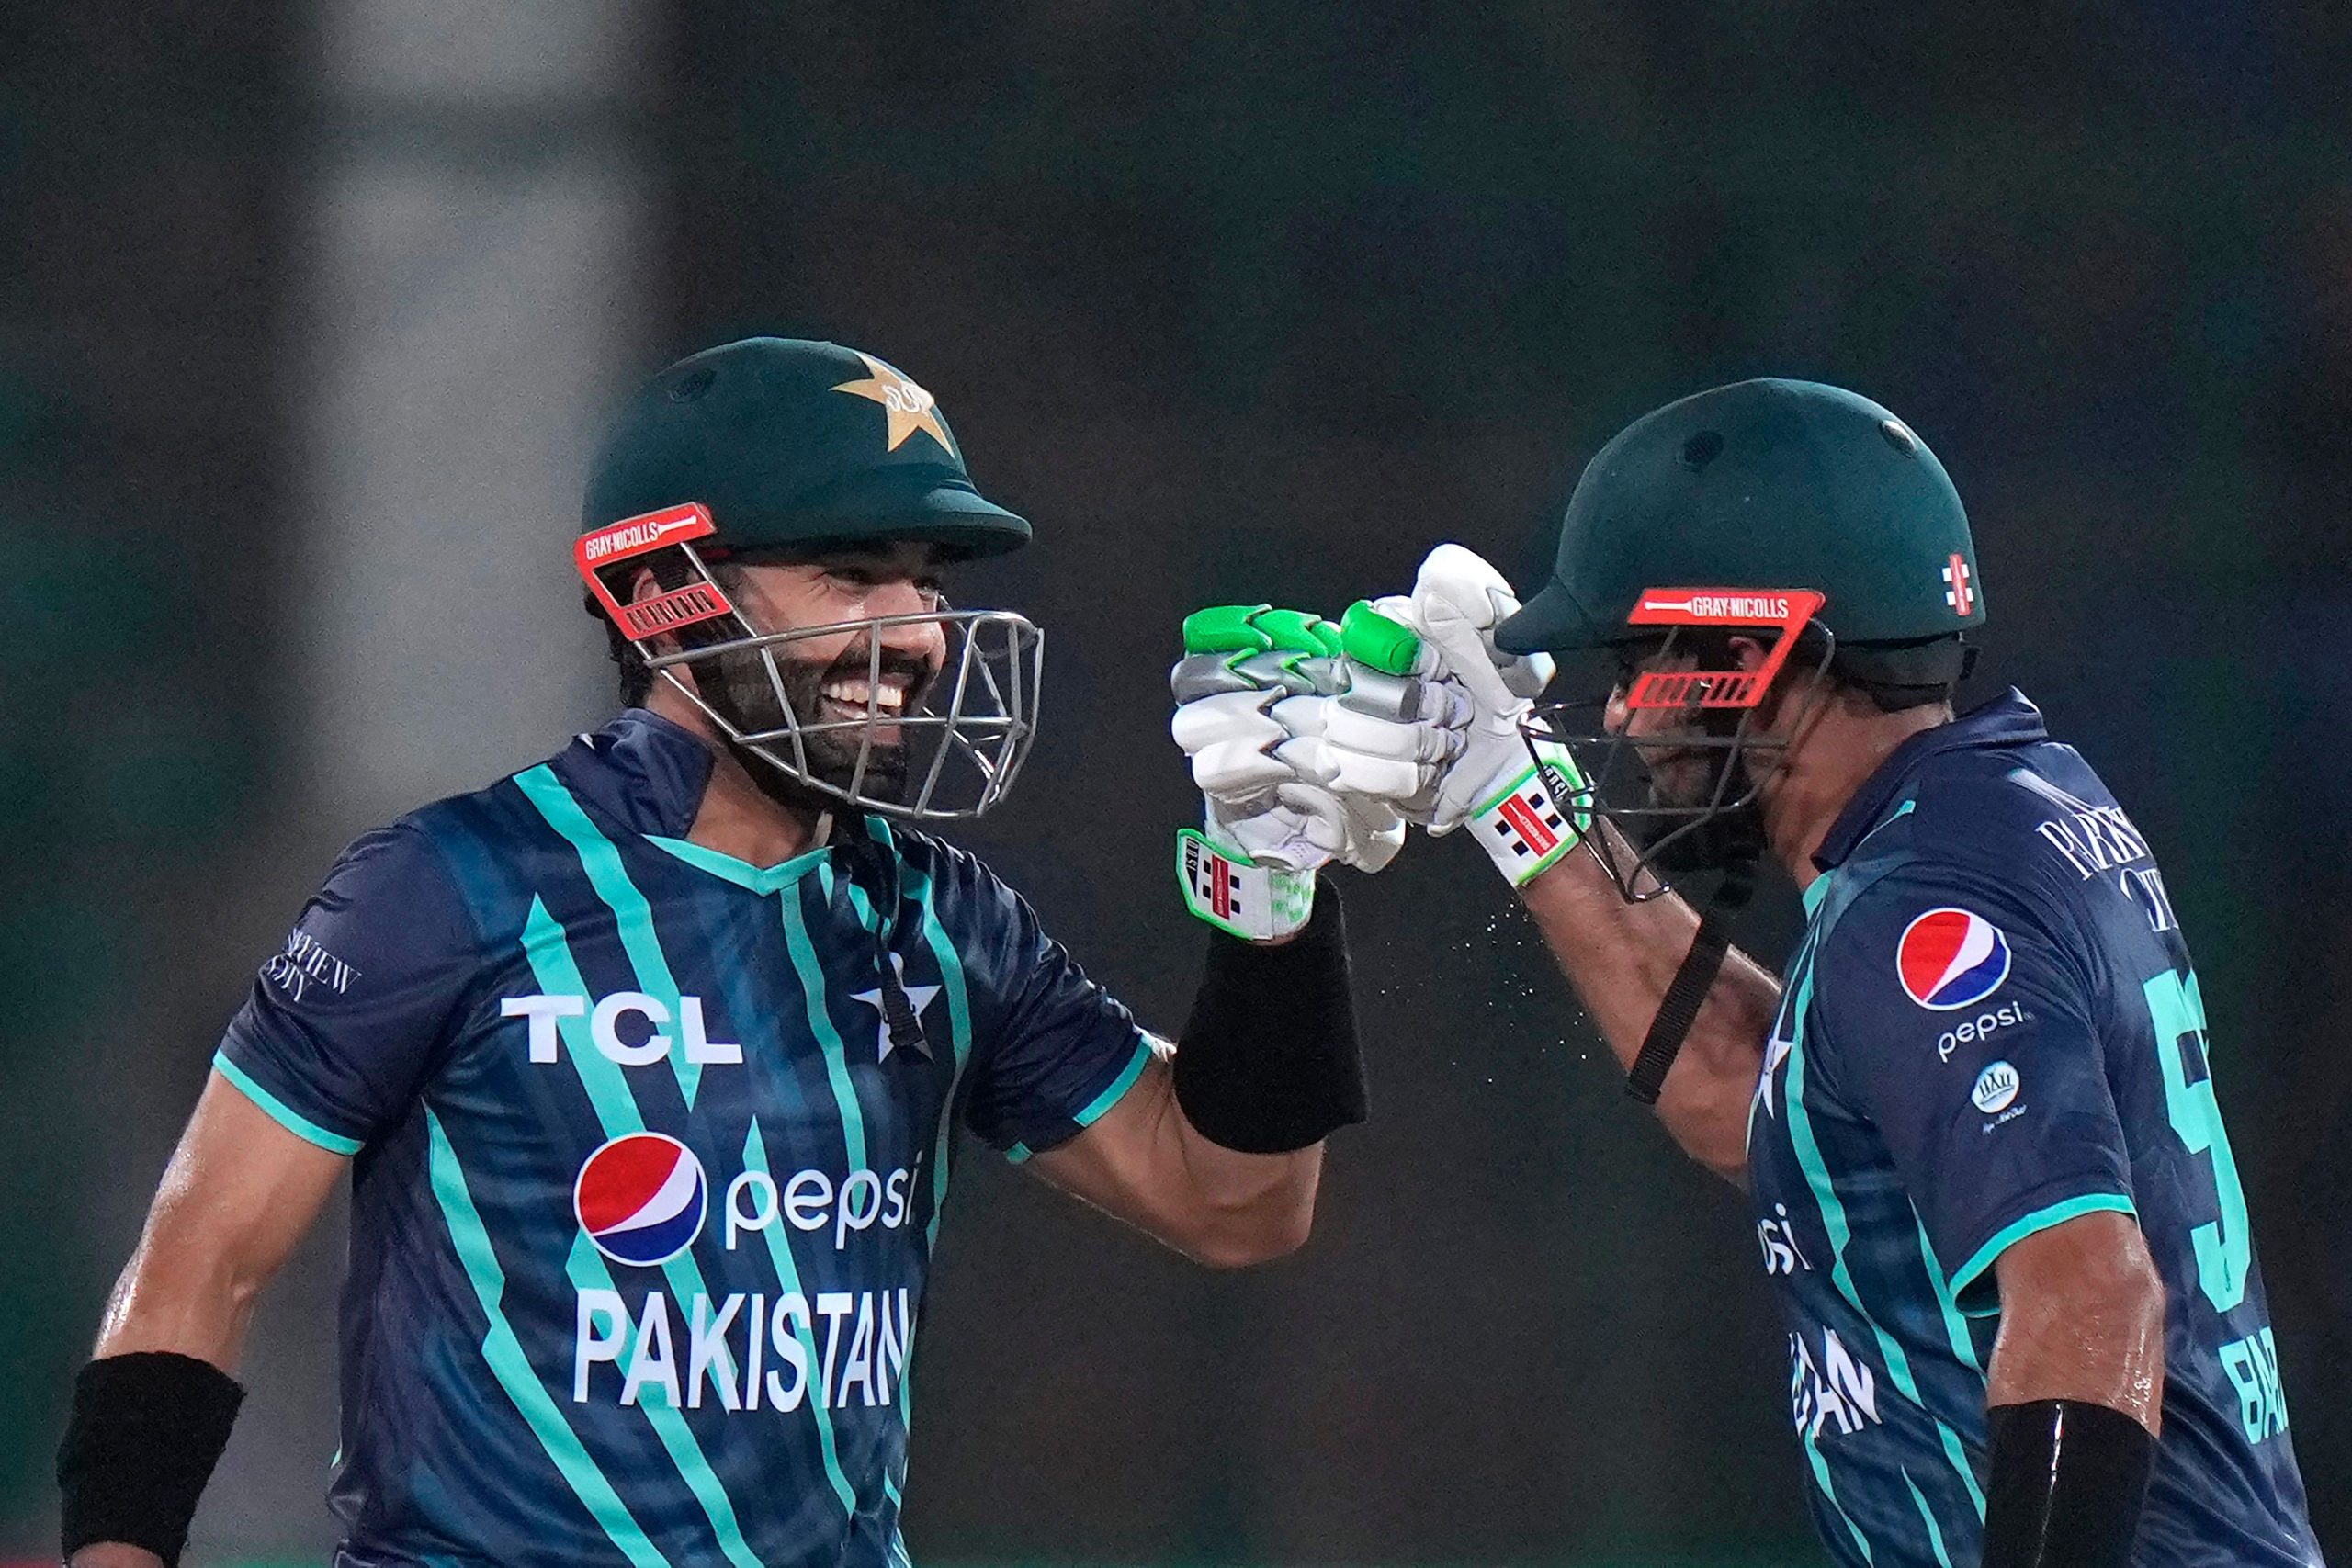 पाकिस्तान 13 साल बाद पहुंचा T20 वर्ल्ड कप के फाइनल में, न्यूजीलैंड को 7 विकेट से रौंदा